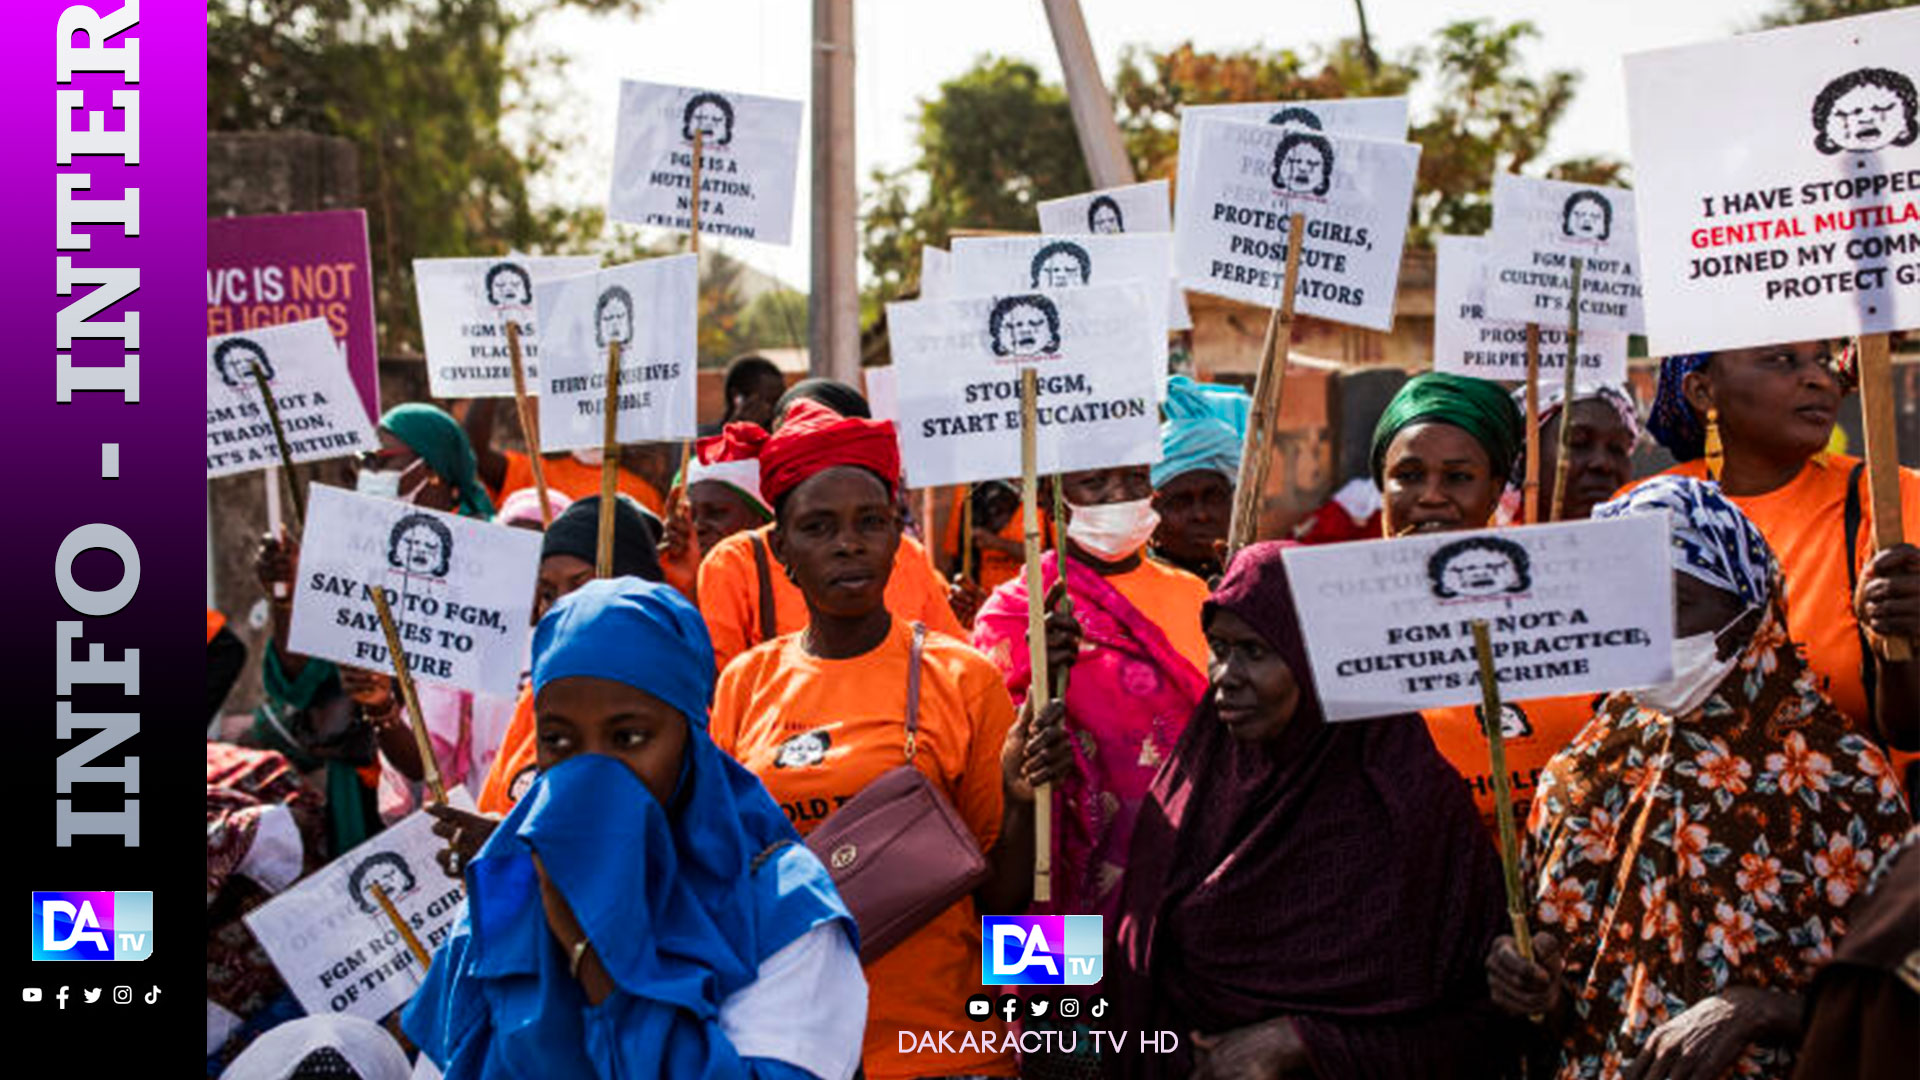 Gambie: l'interdiction de l'excision sera respectée, pour le moment, dit le président